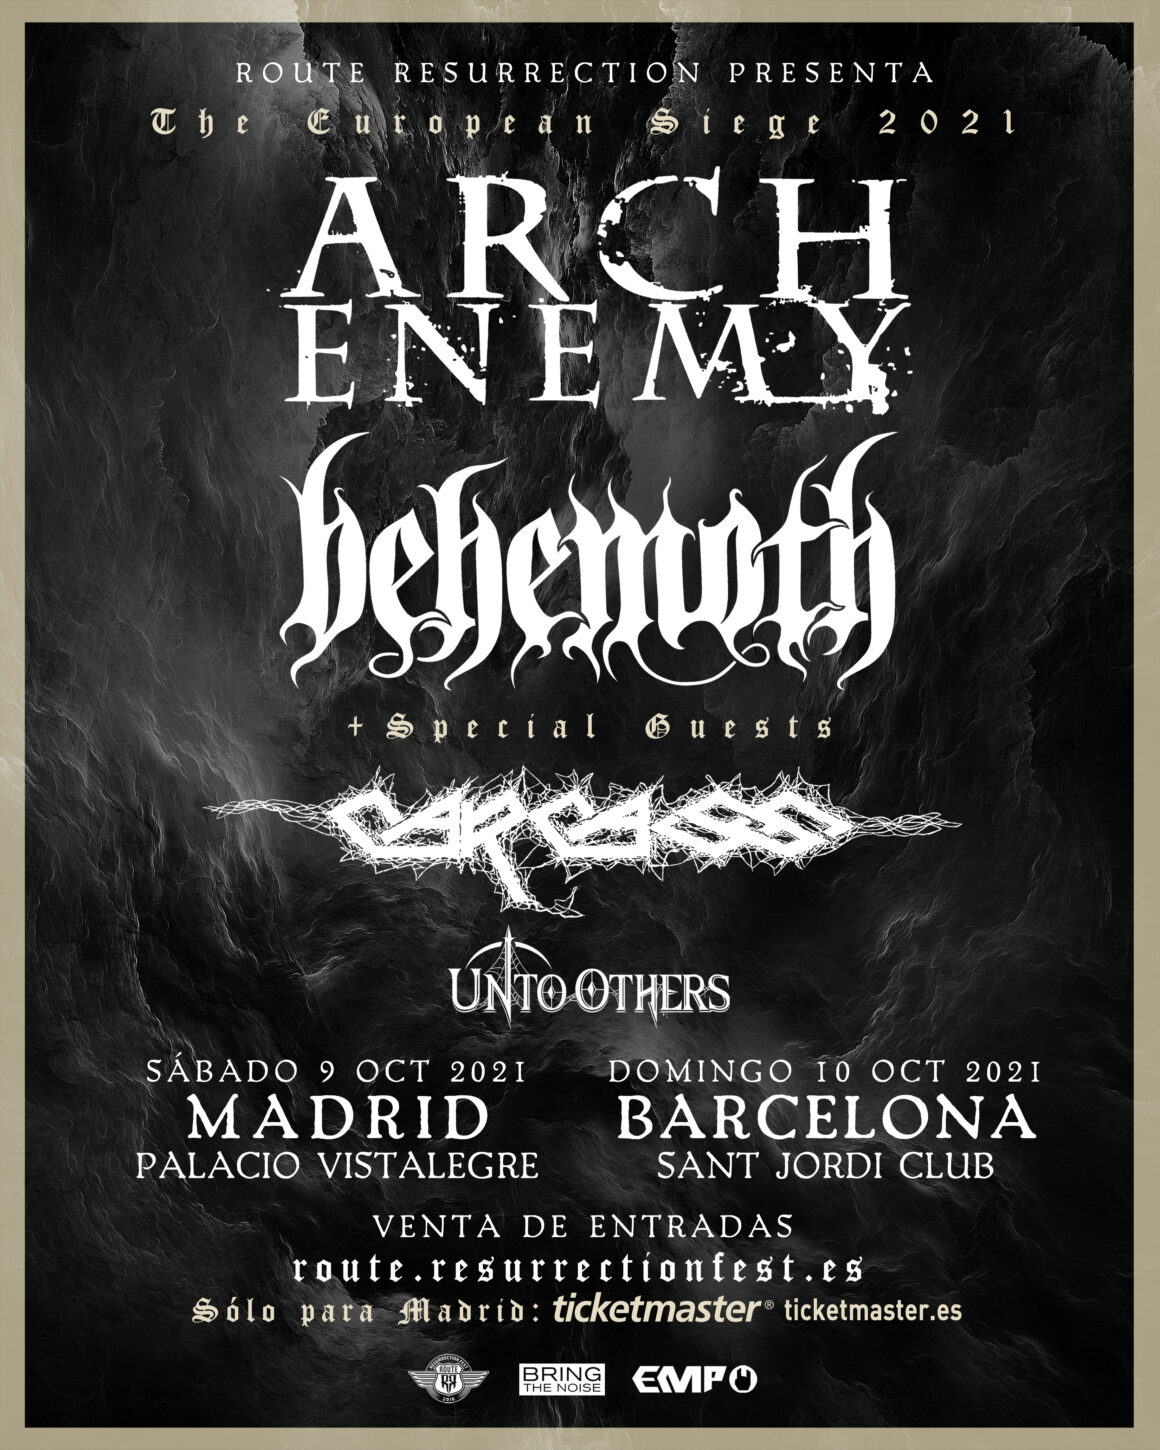 La gira definitiva de metal extremo de Route Resurrection traerá a Arch Enemy y Behemoth como cabezas de cartel y los legendarios Carcass como invitados especiales